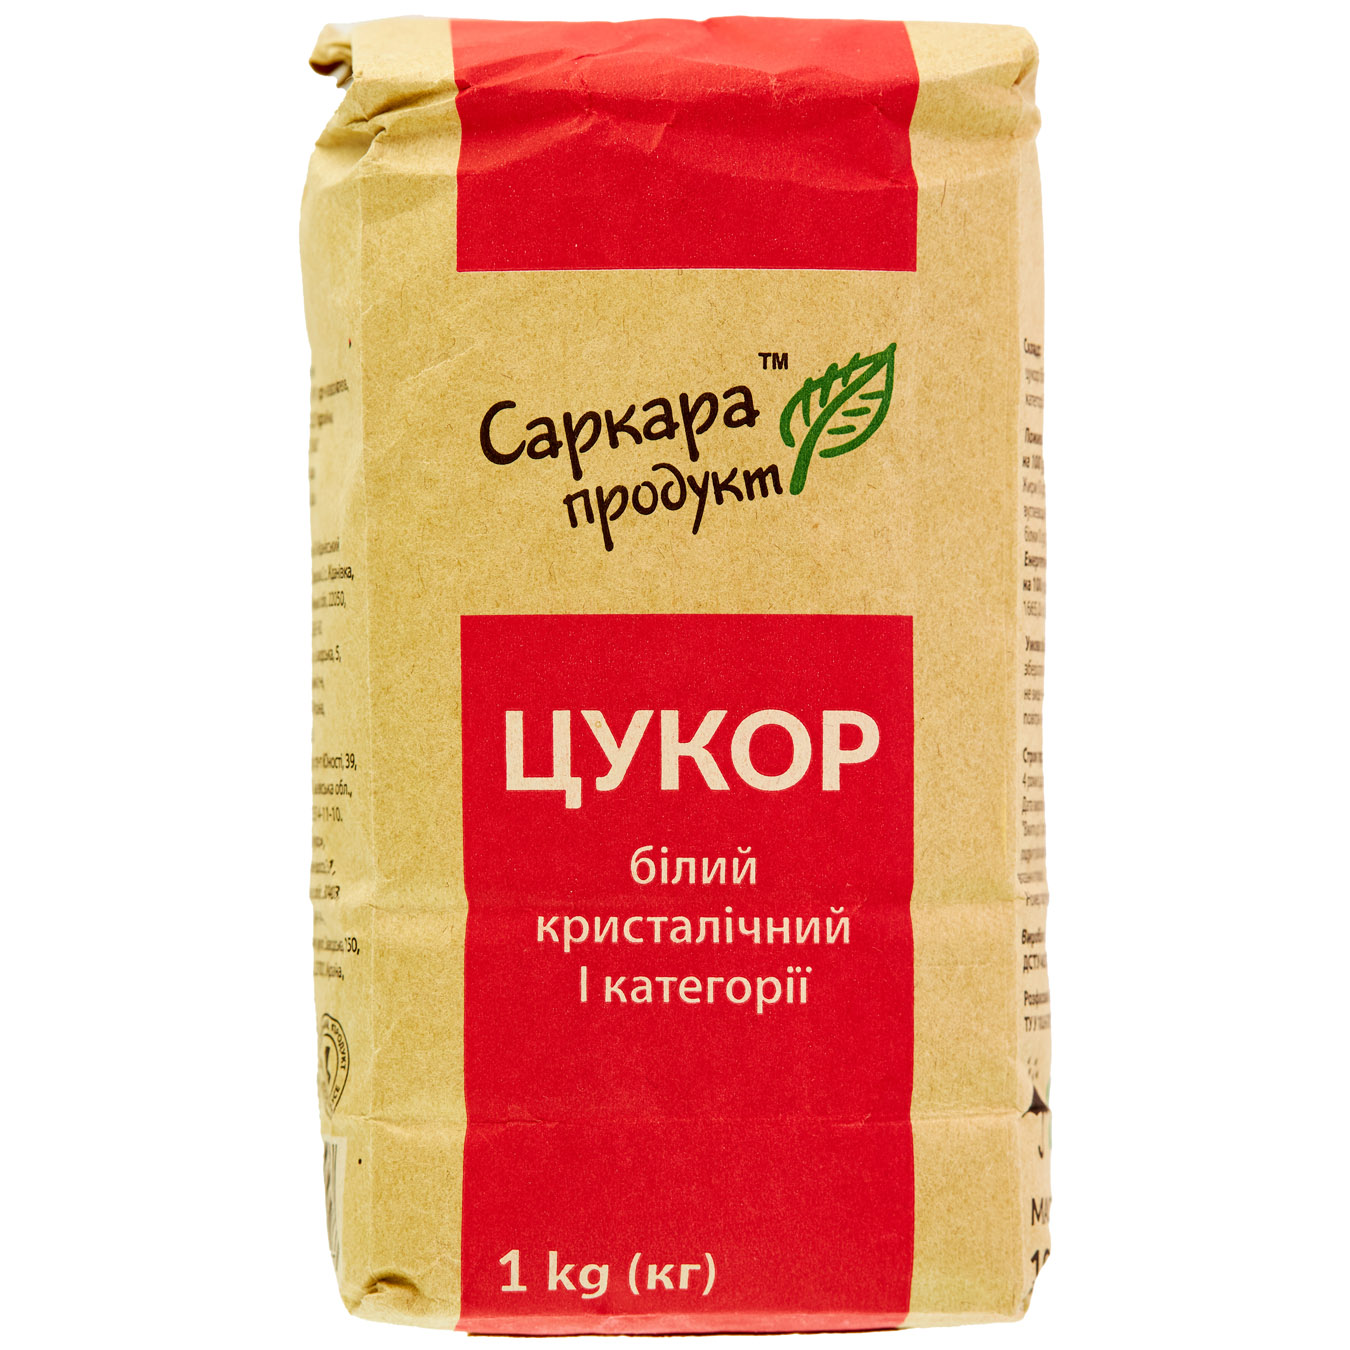 Sarkara Produkt White Сrystalline Sugar 1kg